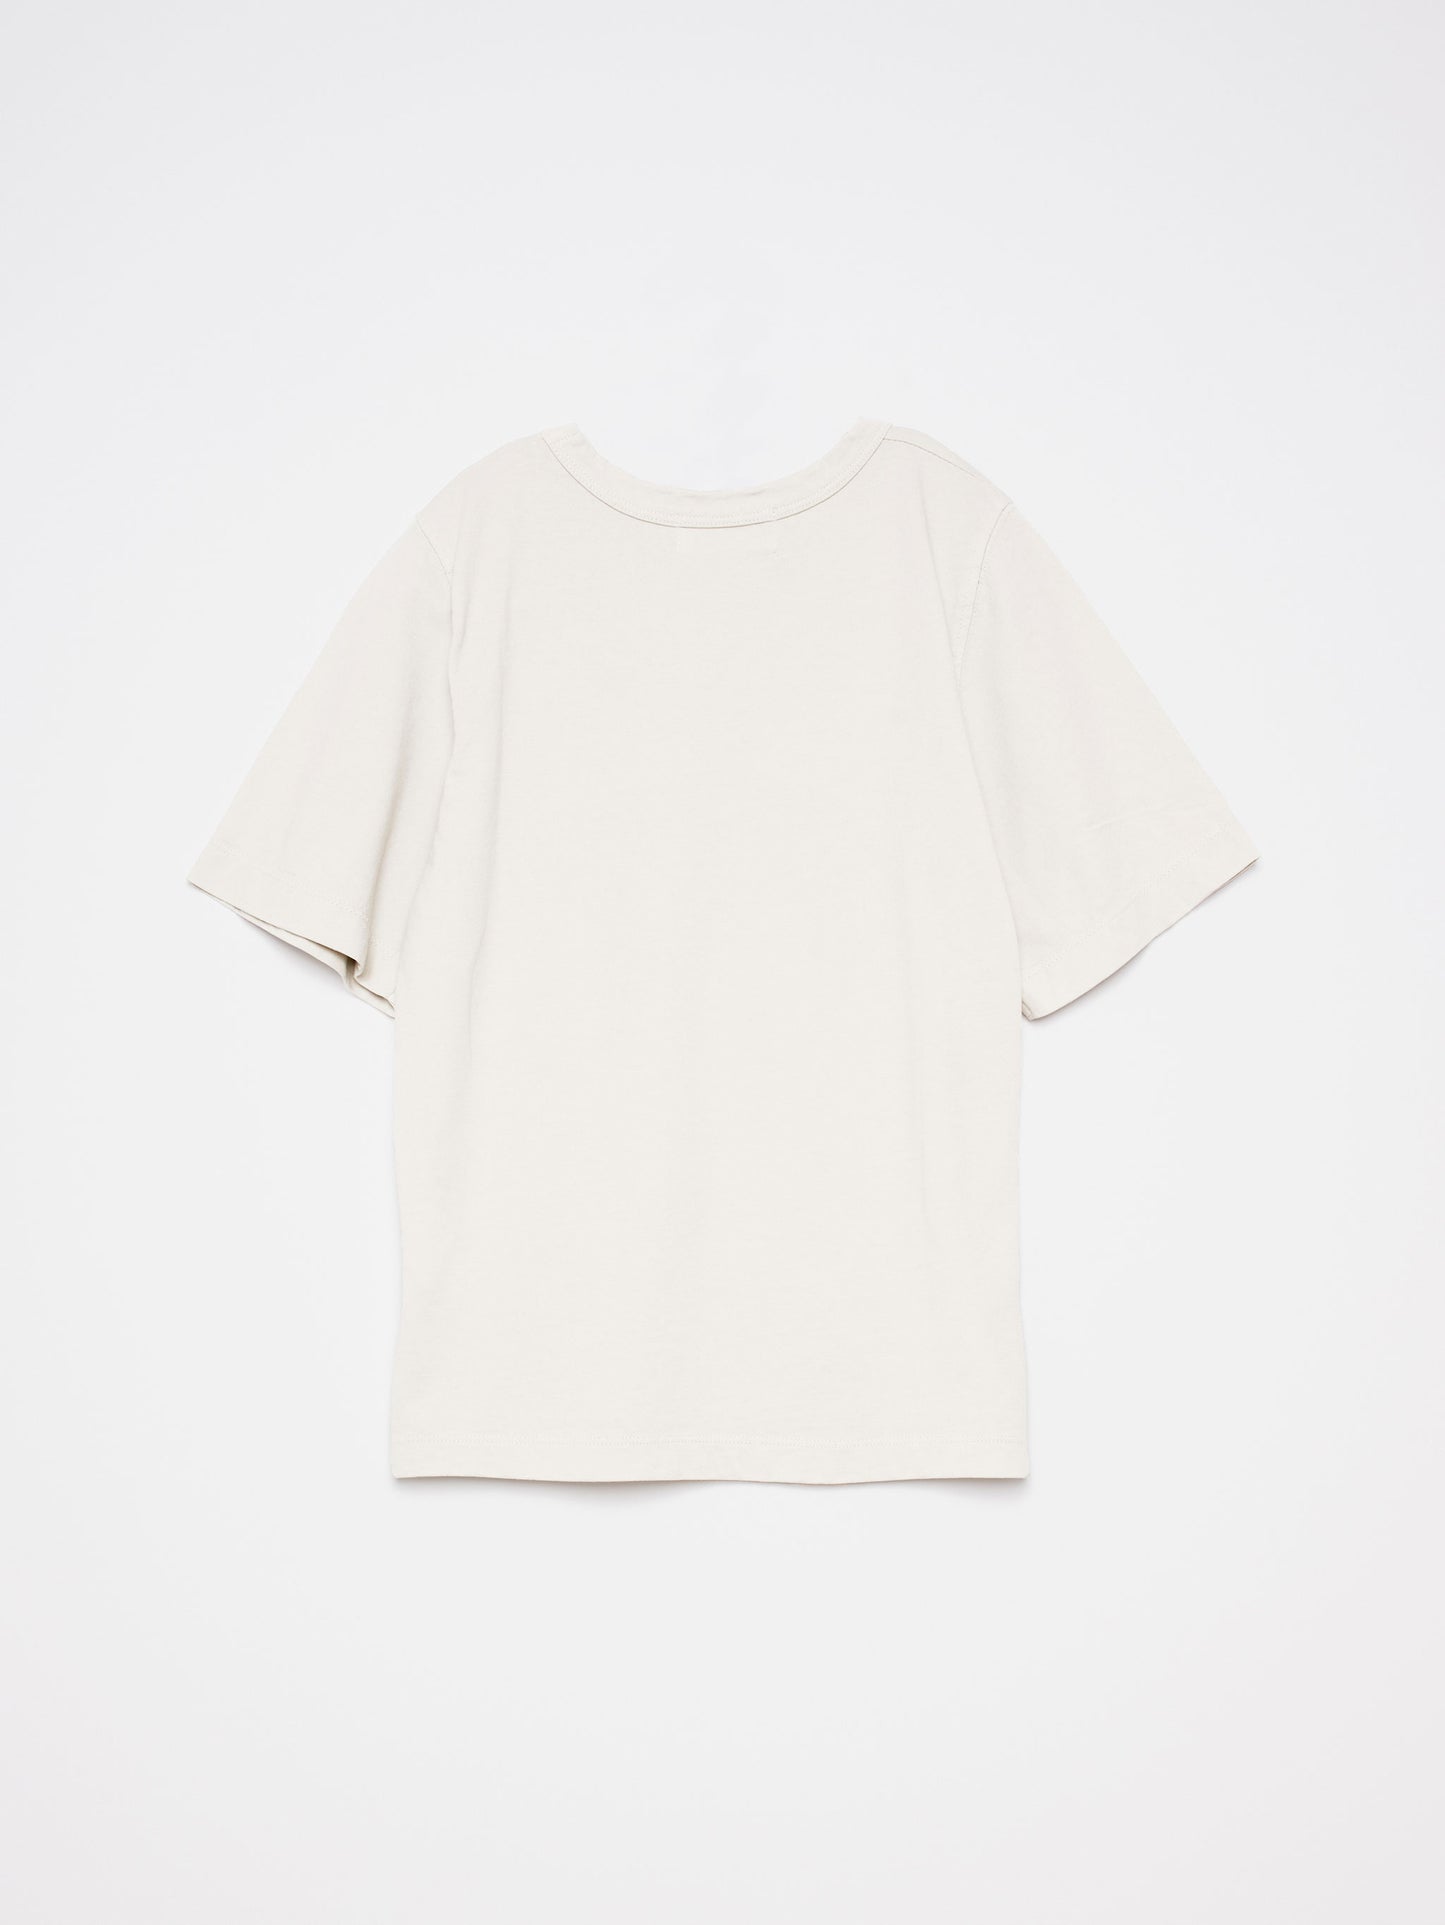 T-shirt nº05 Ivory White